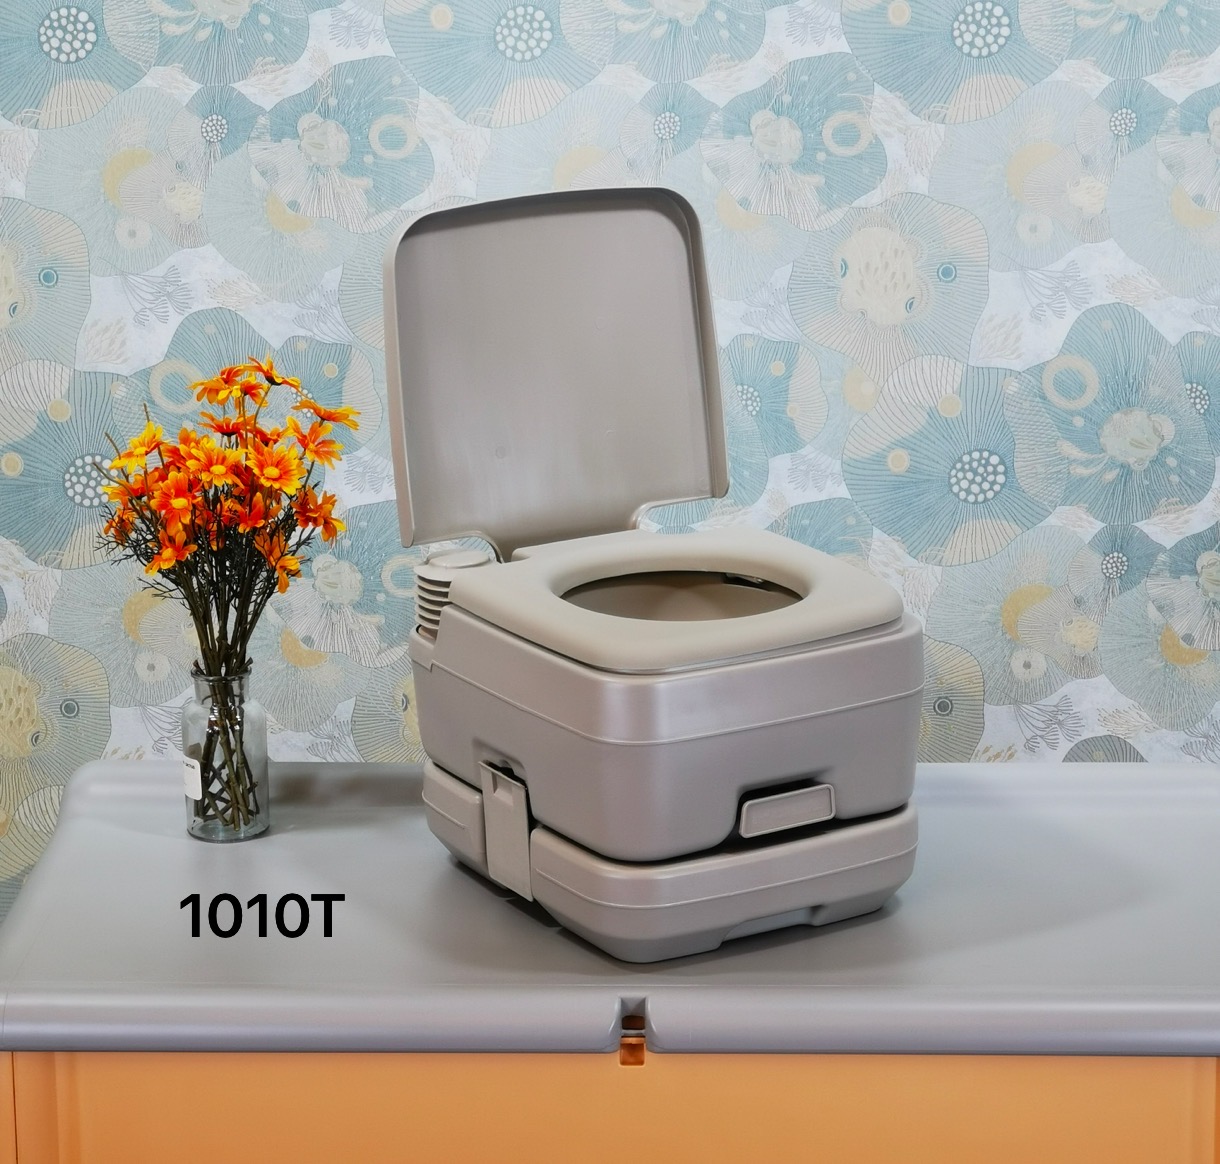 10L портативный туалет для кемпинга, RV, лодка